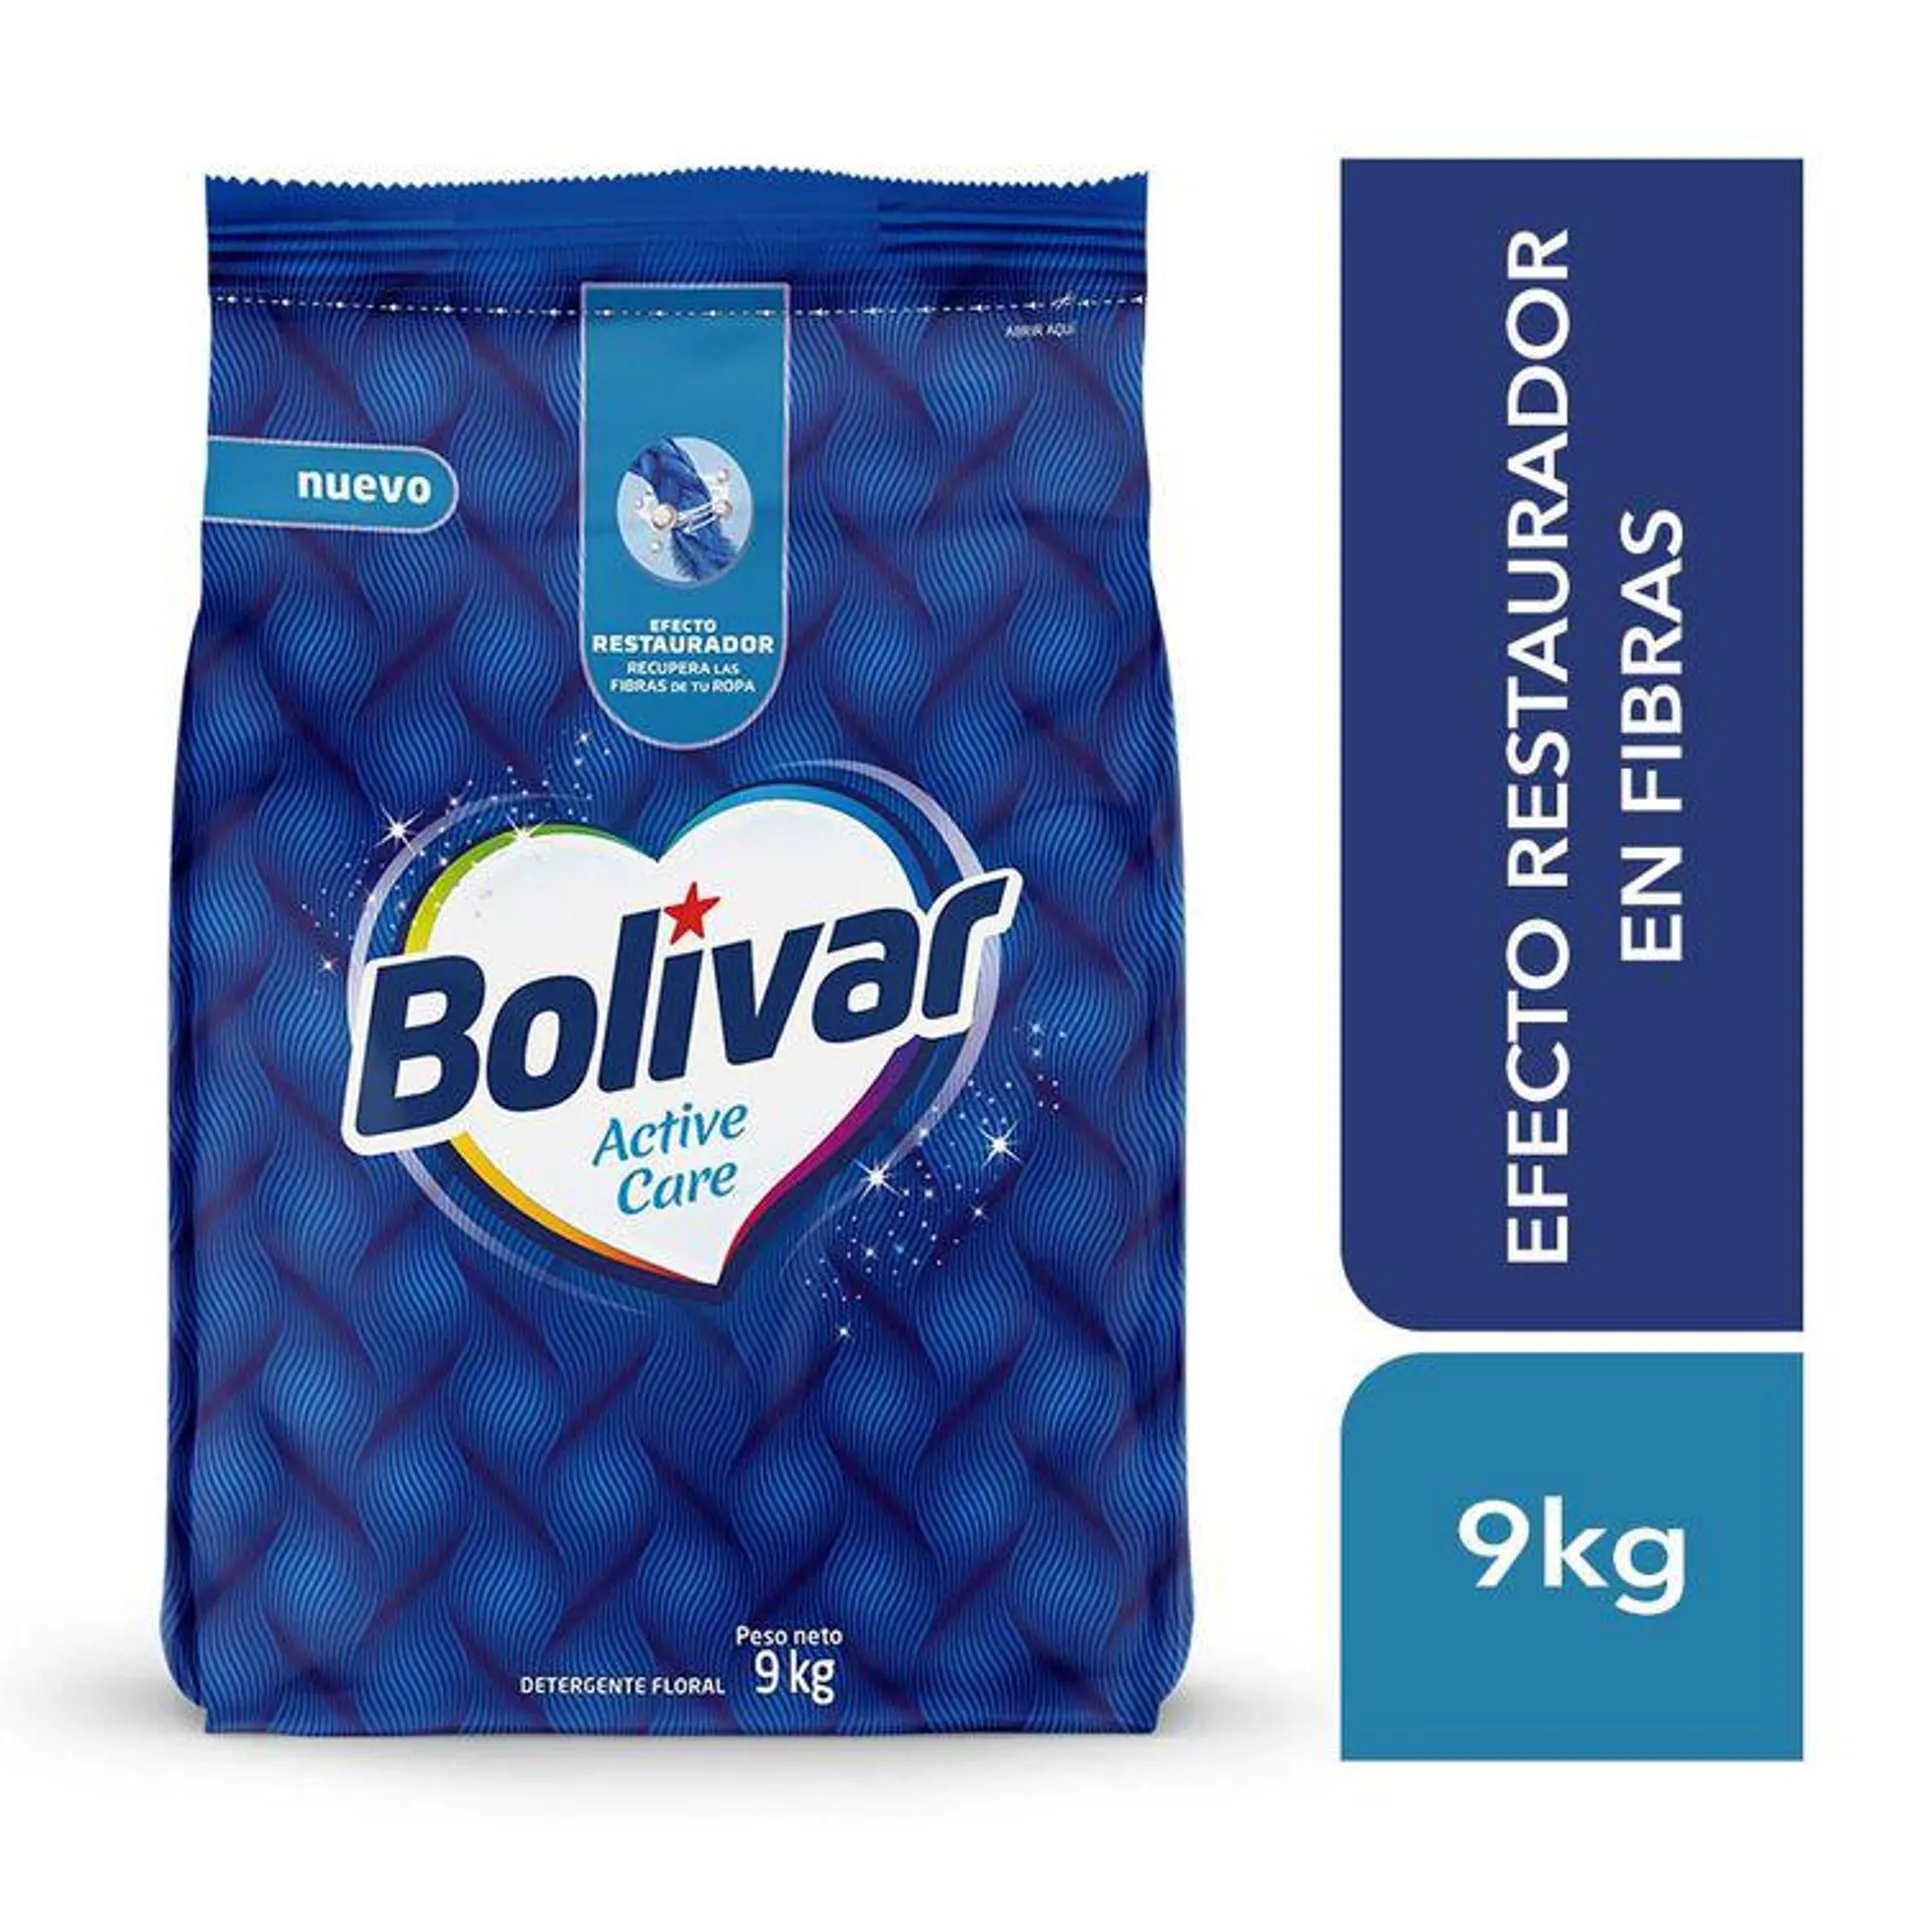 Detergente en Polvo Bolívar Active Care 9kg